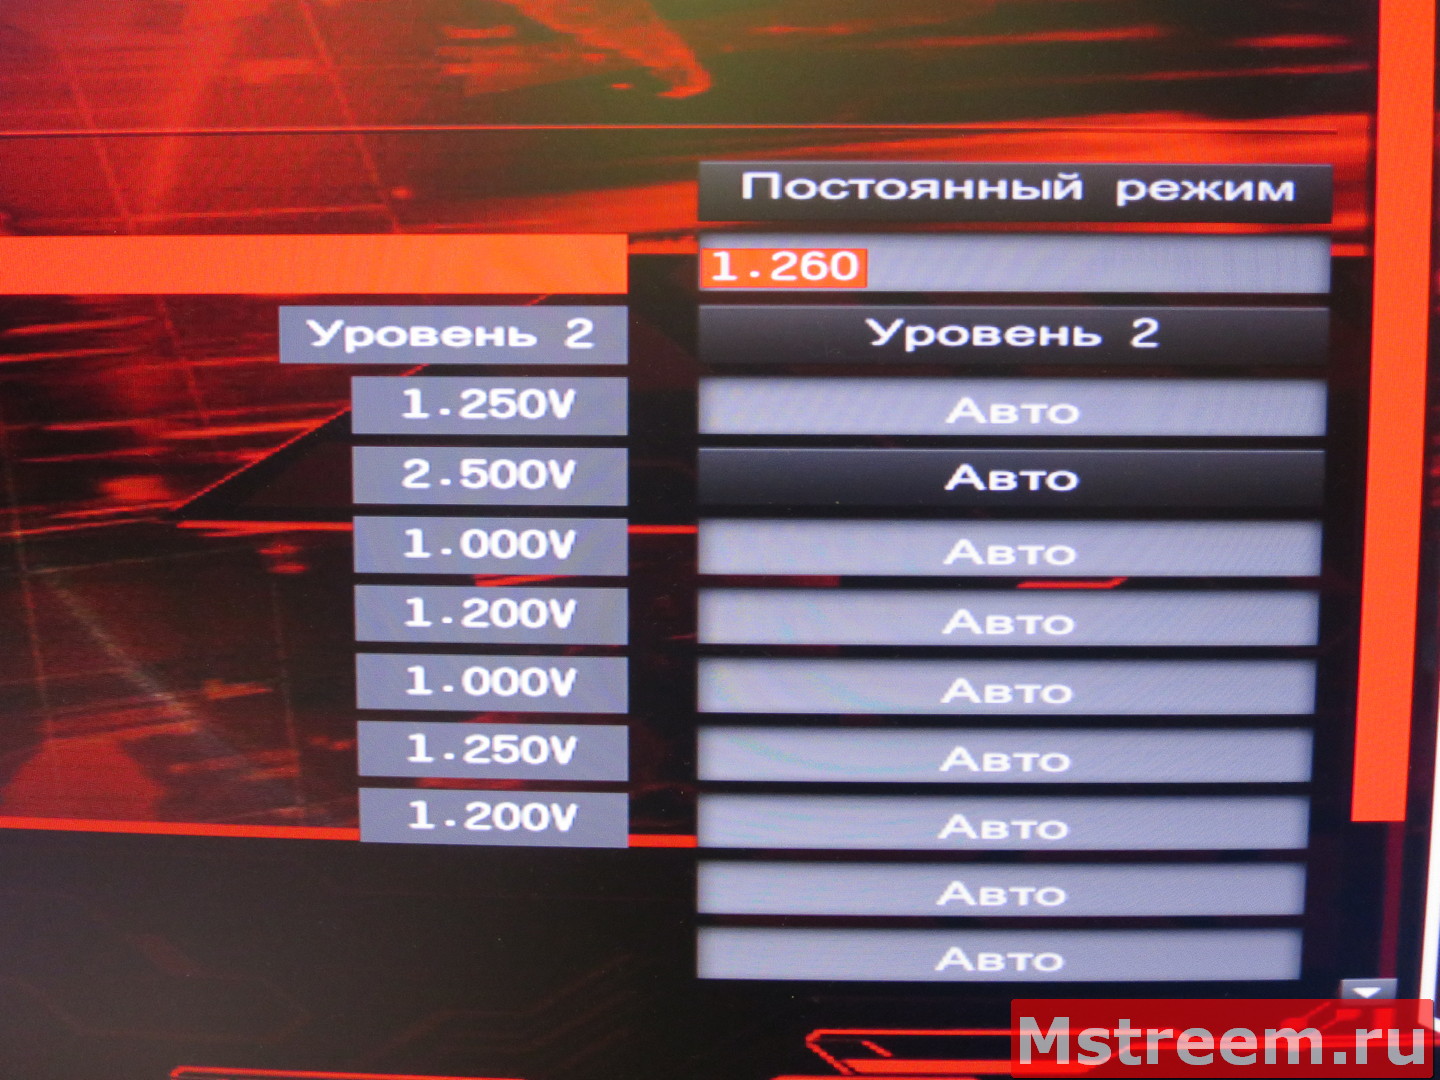 Разгон процессора на материнской платы ASRock Fatal1ty Z370 Gaming-ITX/ac